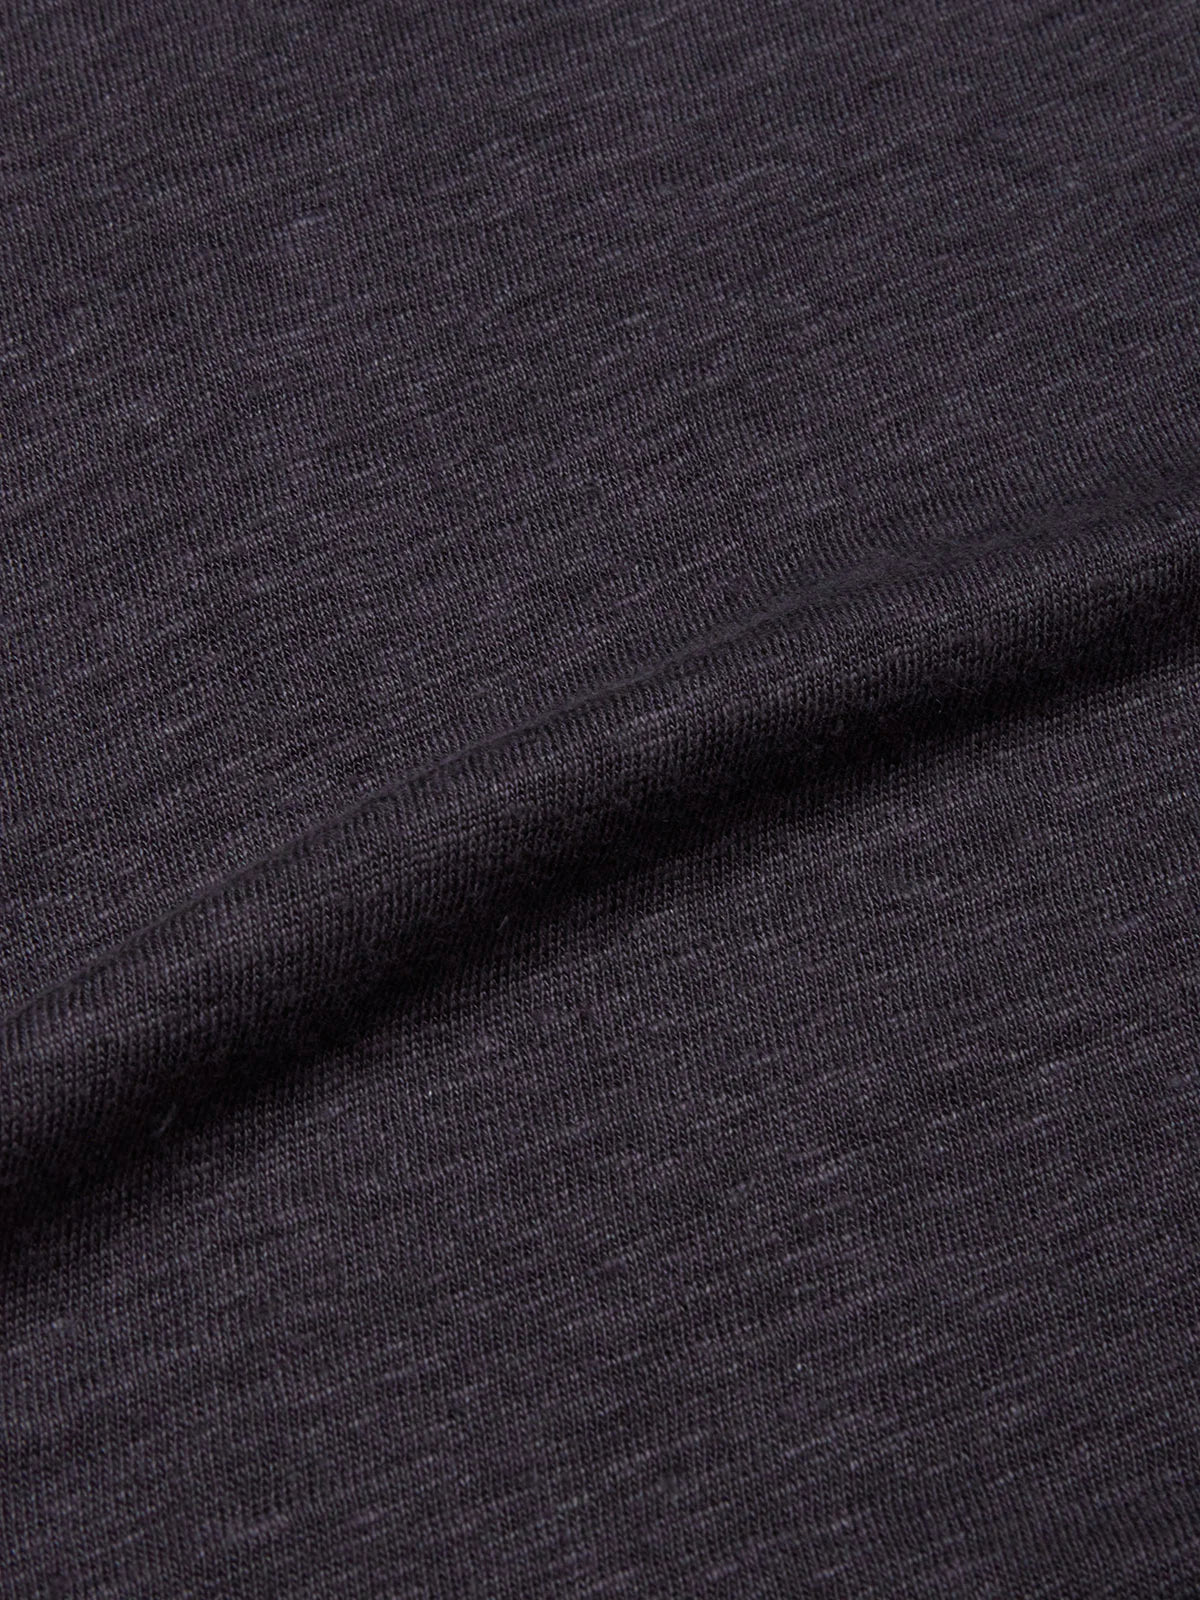 Blue de Genes - Totti T-Shirt - Dark Navy (H)